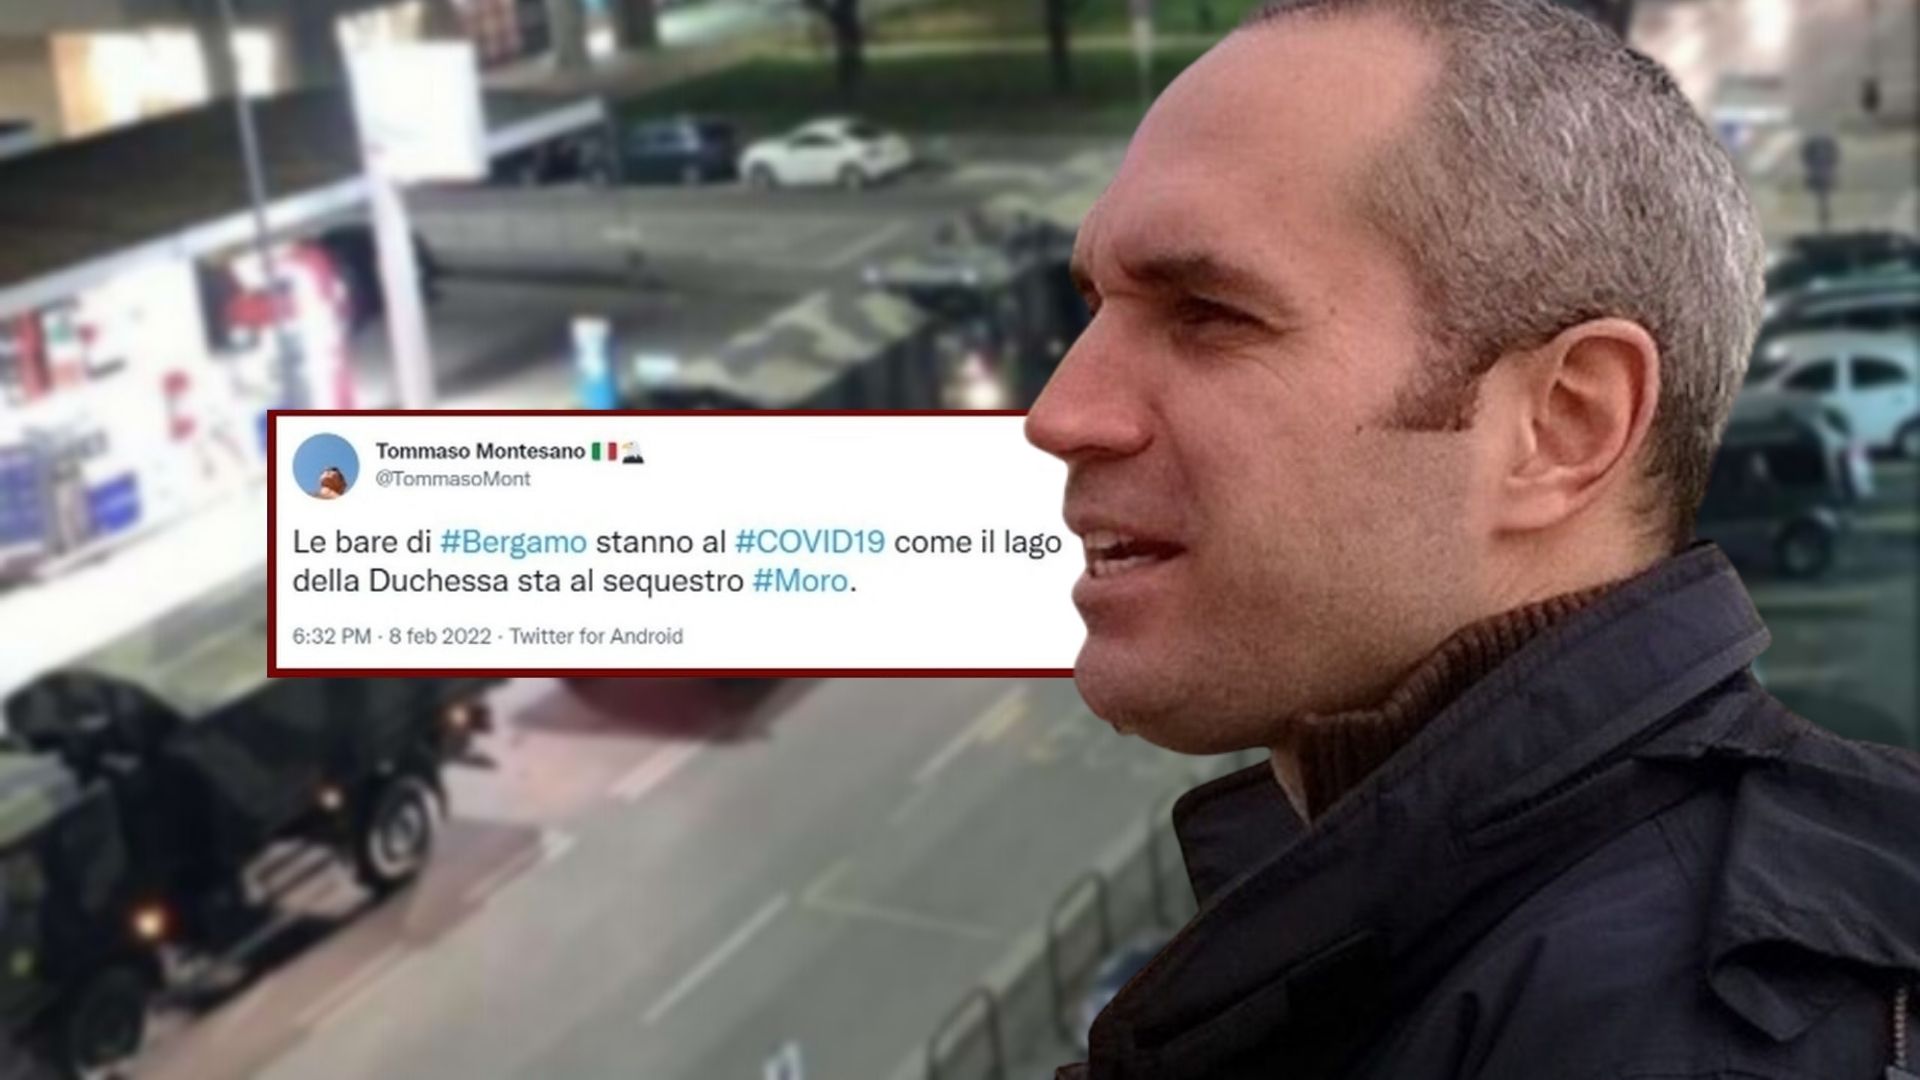 I familiari delle vittime nelle bare di Bergamo querelano il giornalista Montesano dopo il tweet offensivo